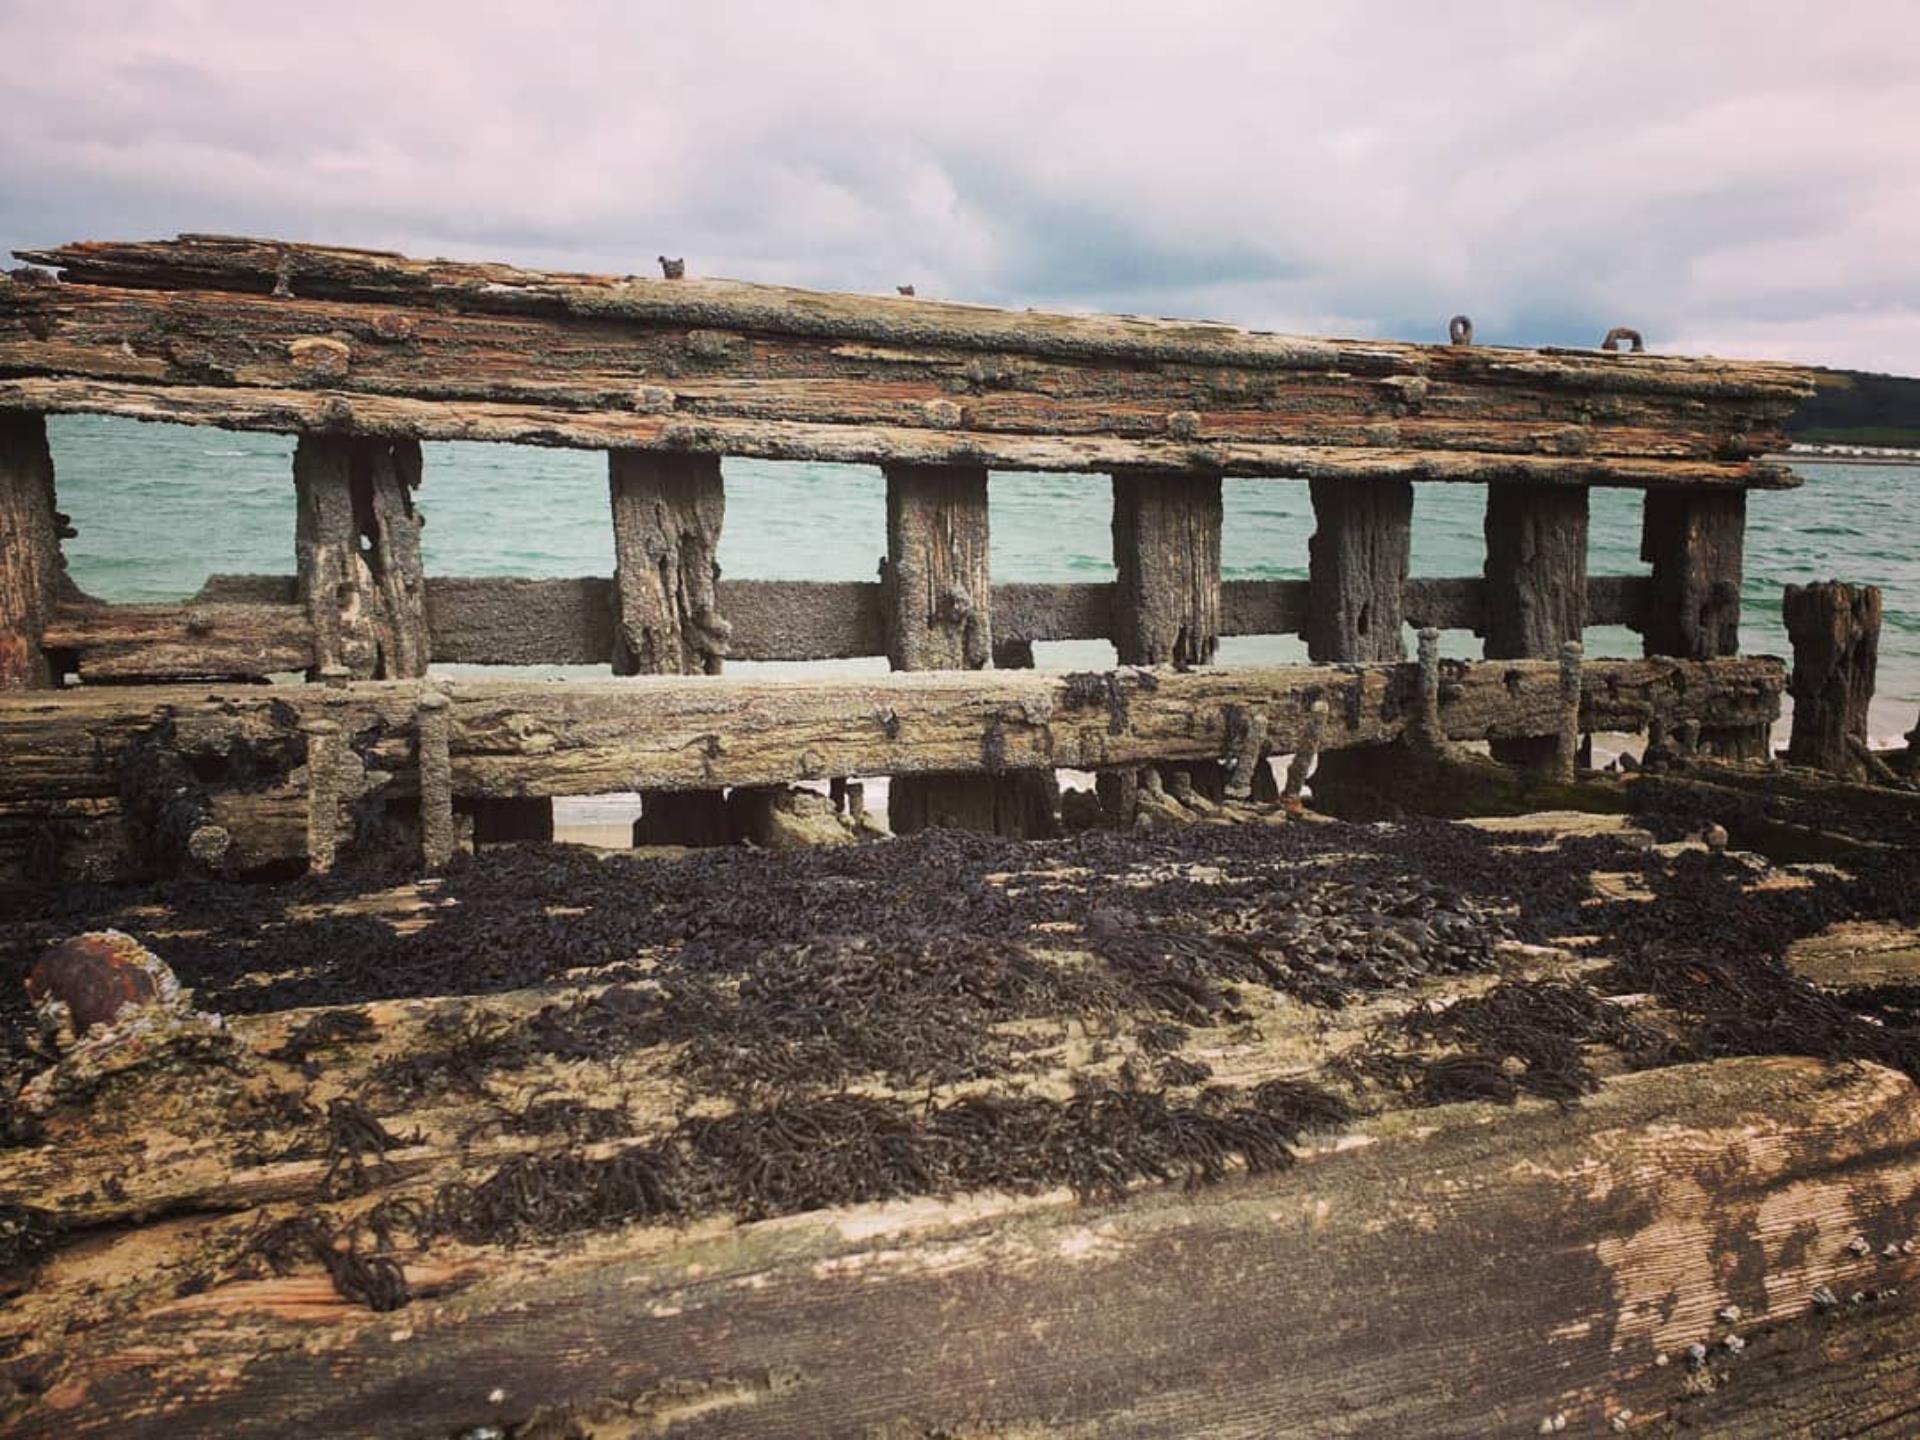 Shipwreck on Cefn Sidan Beach